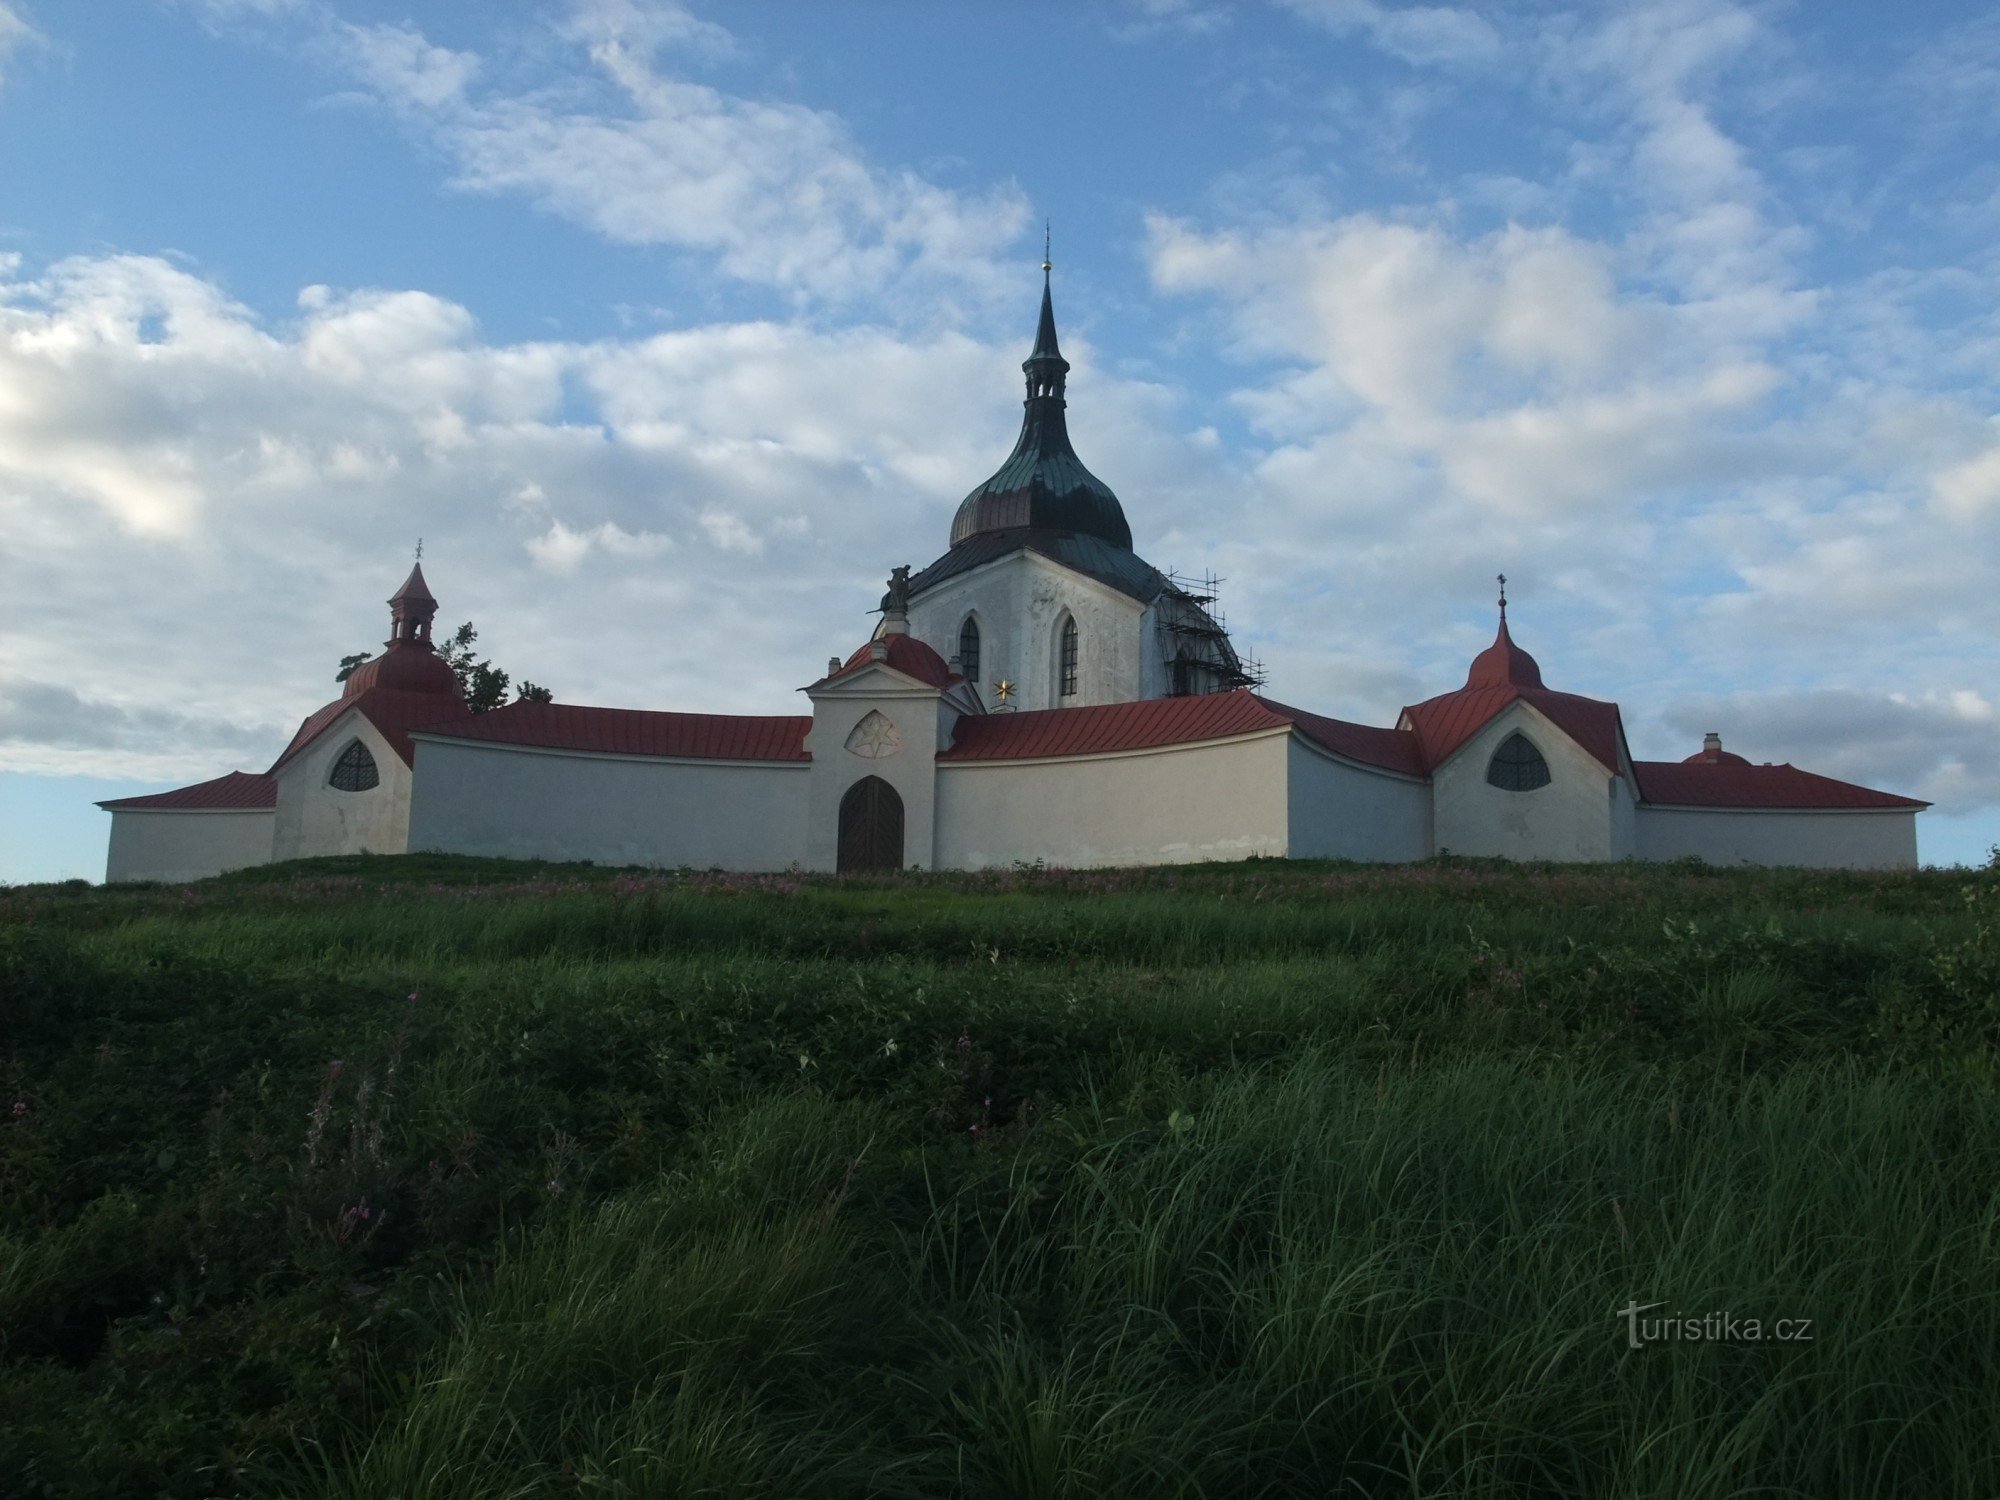 Паломницький костел св. Ян Непомуцький